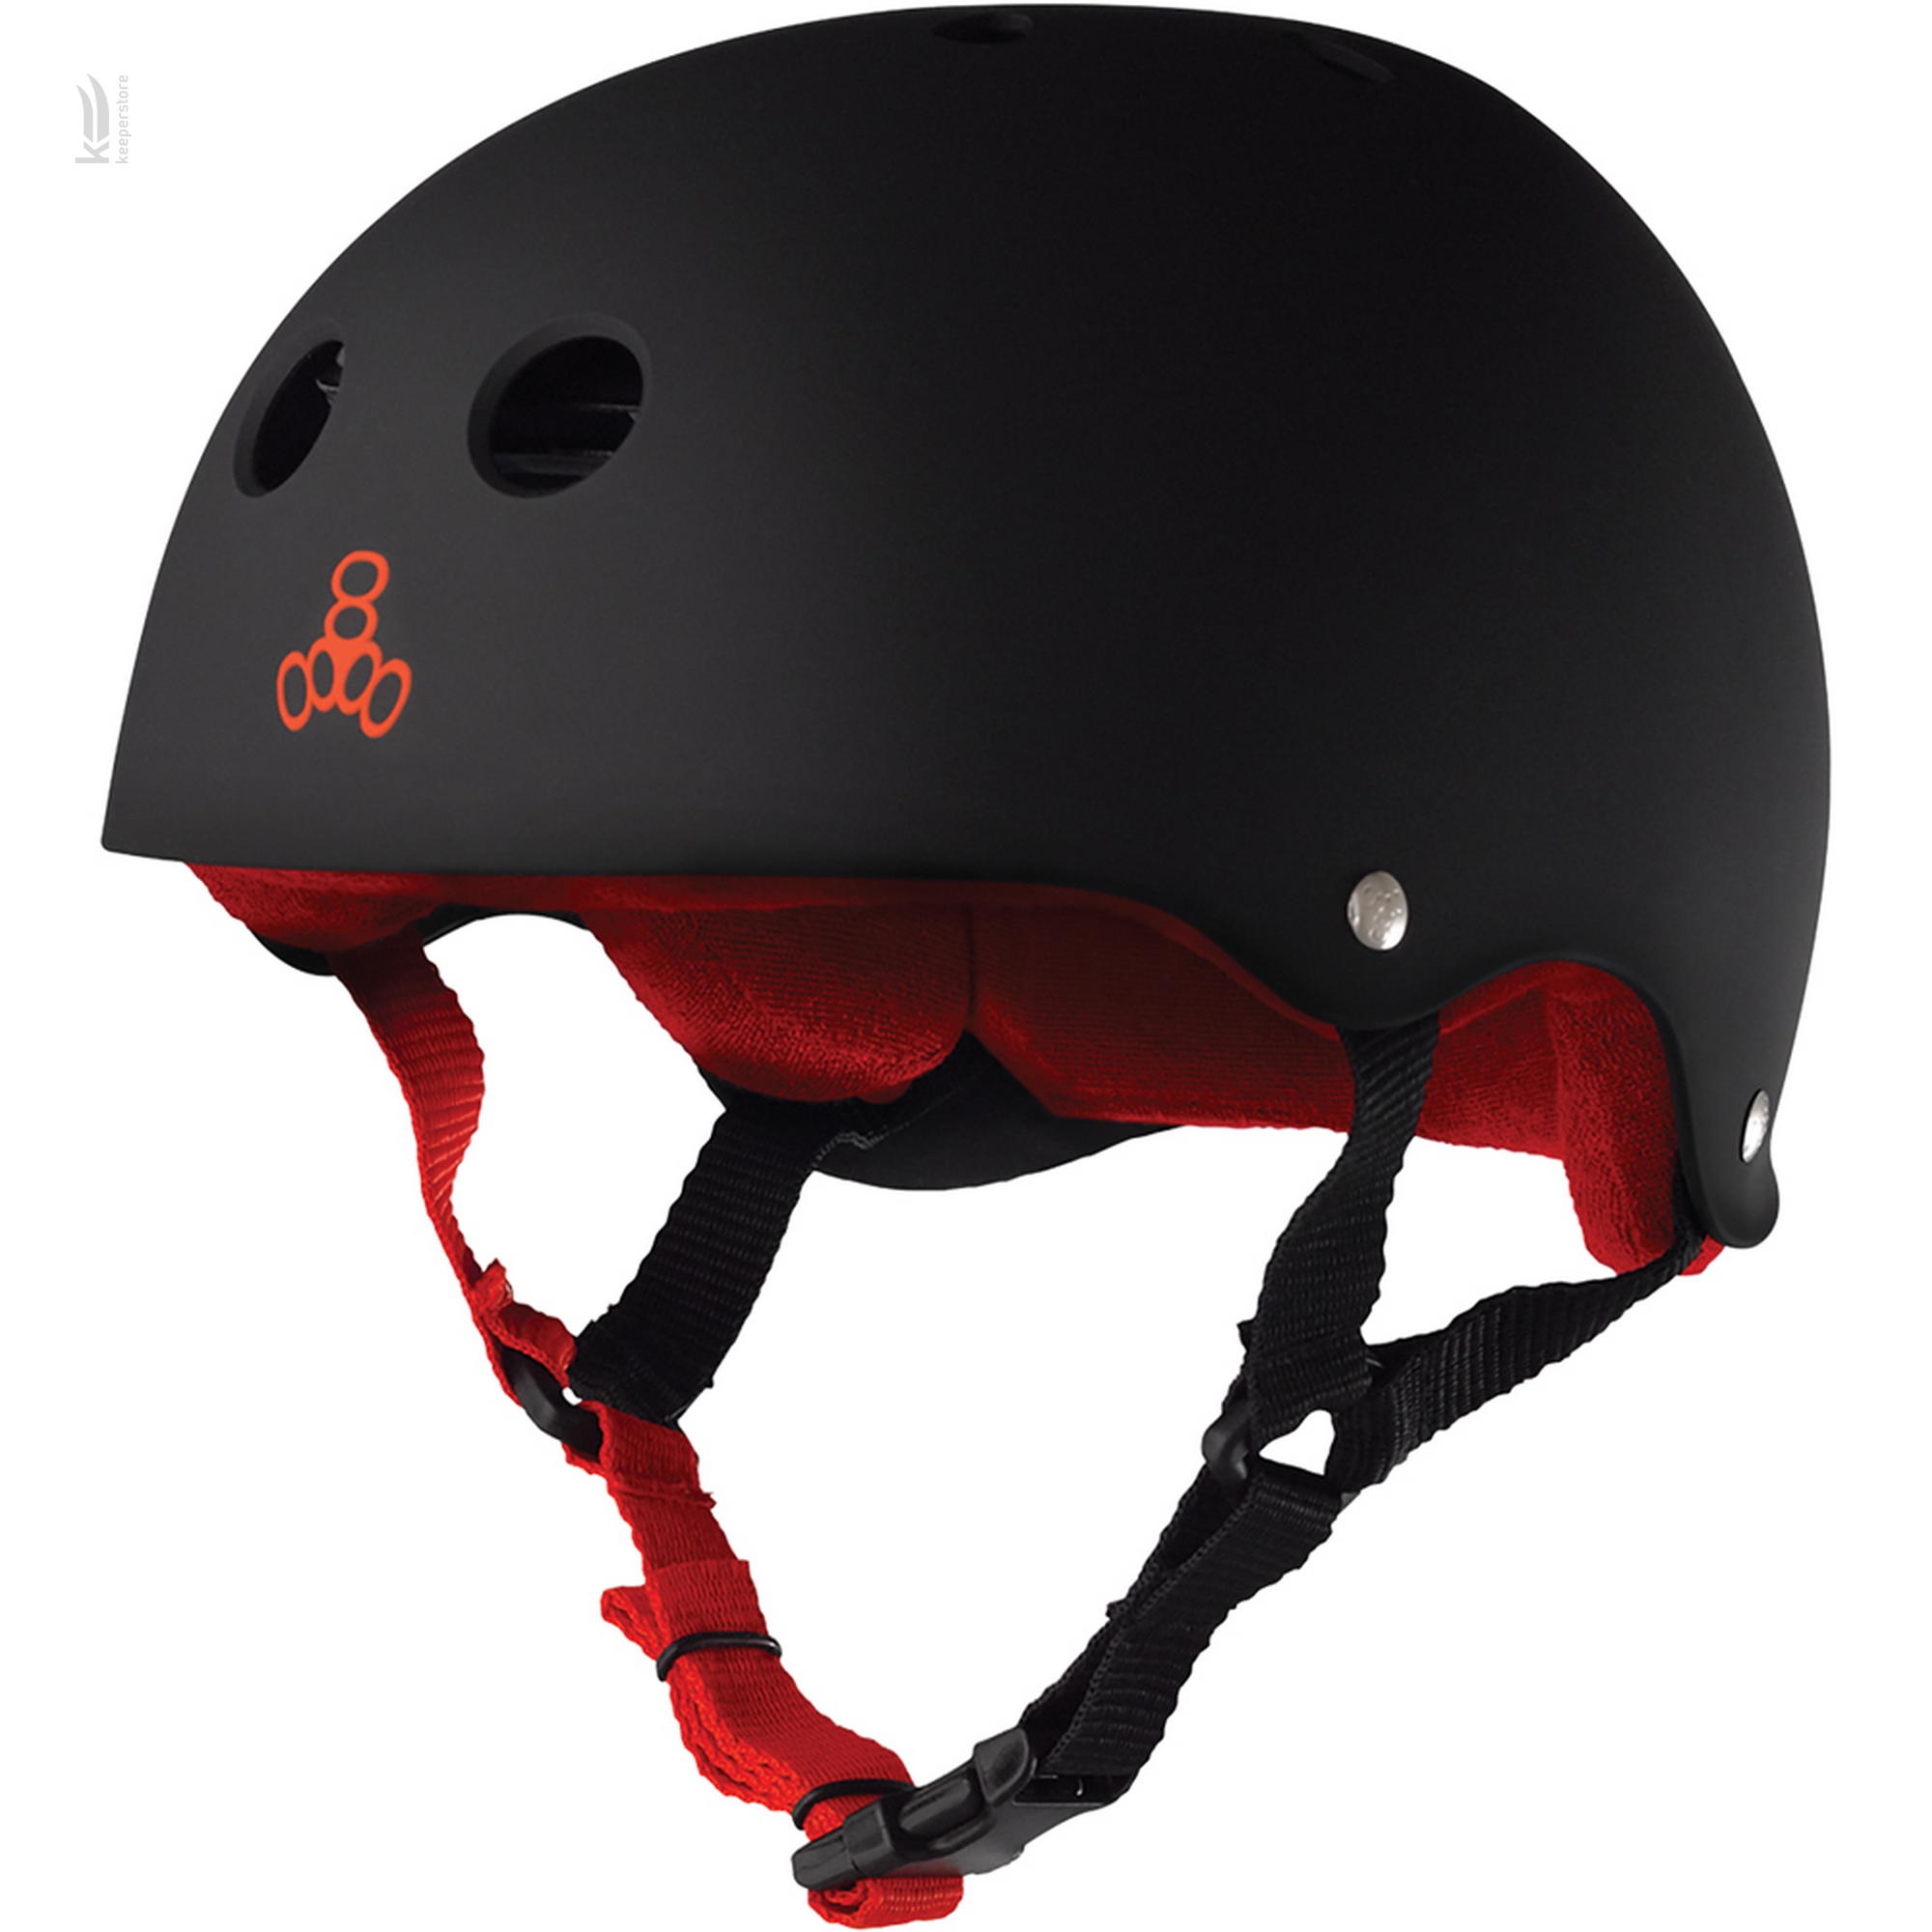 Захисний шолом казанок Triple8 Sweatsaver Helmet Black w/ Red (S)